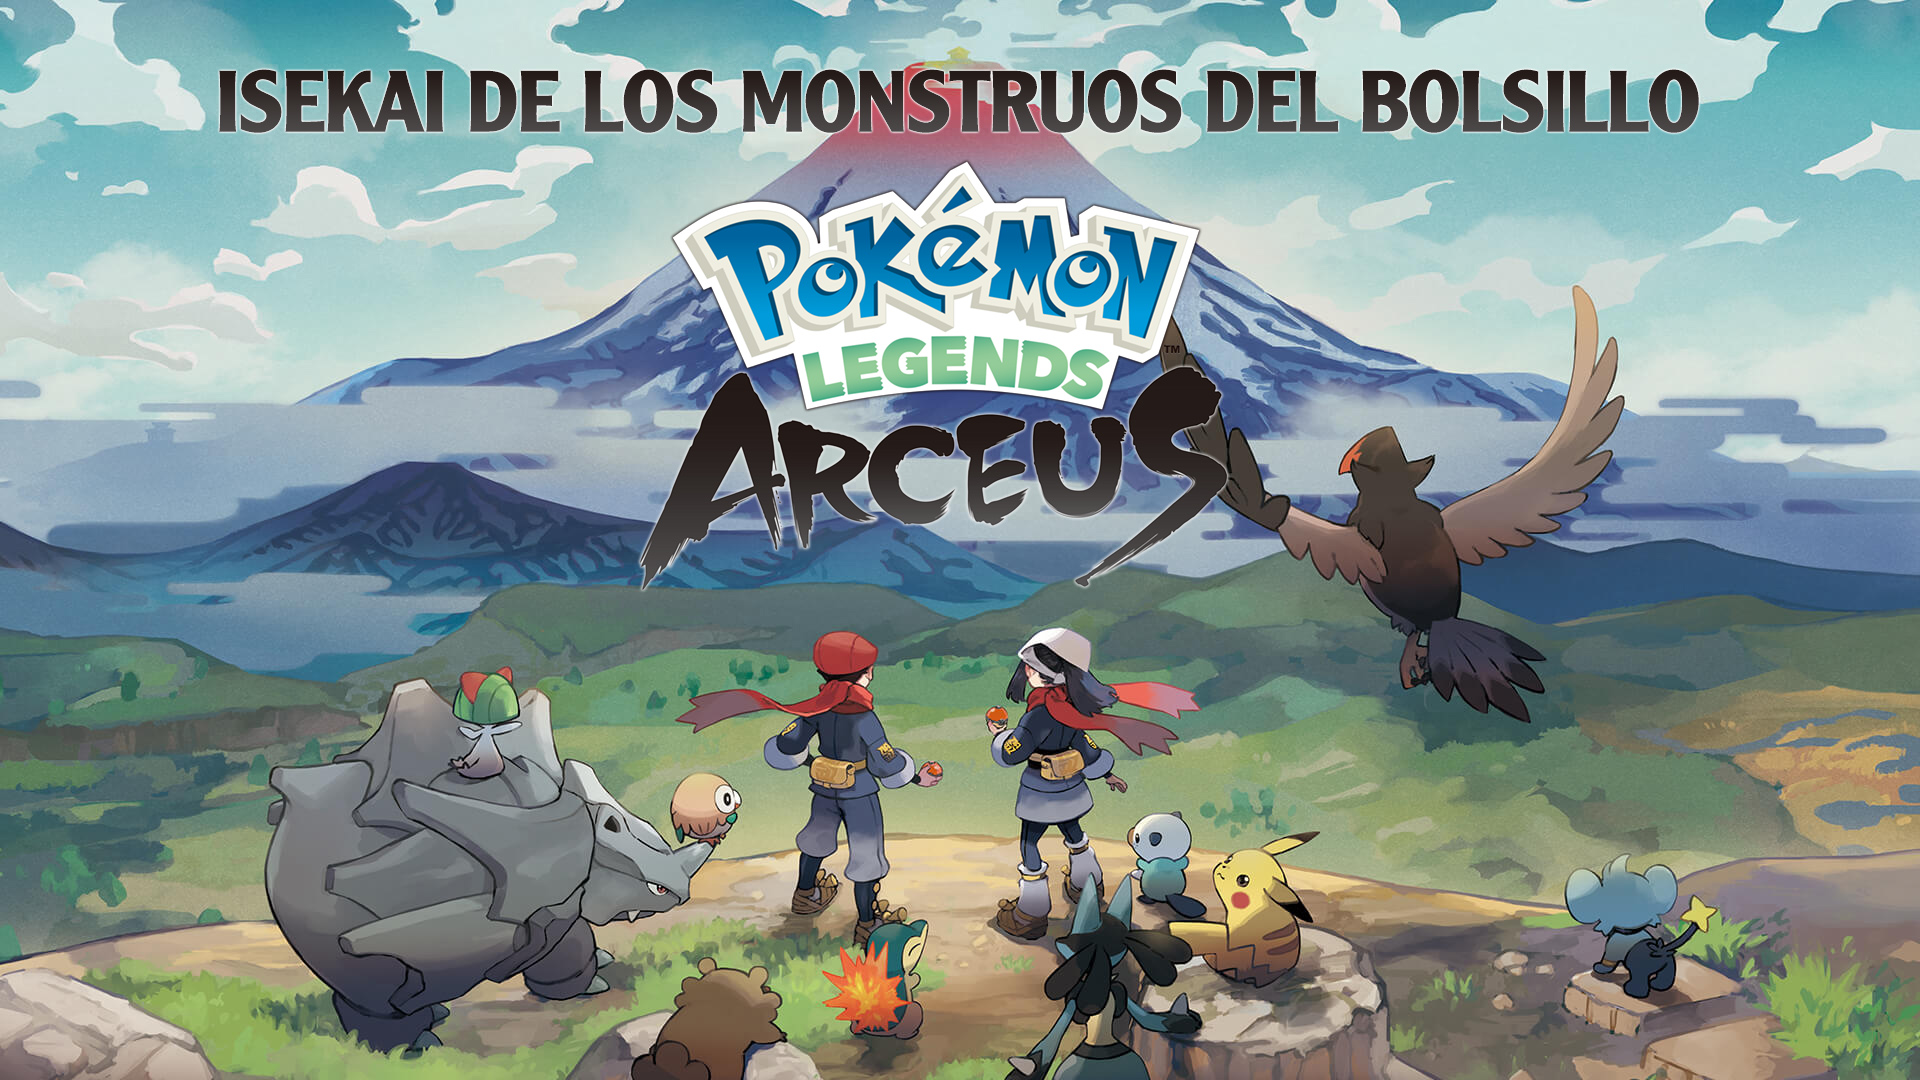 Pokémon Legends: Arceus – Isekai de los monstruos de bolsillo